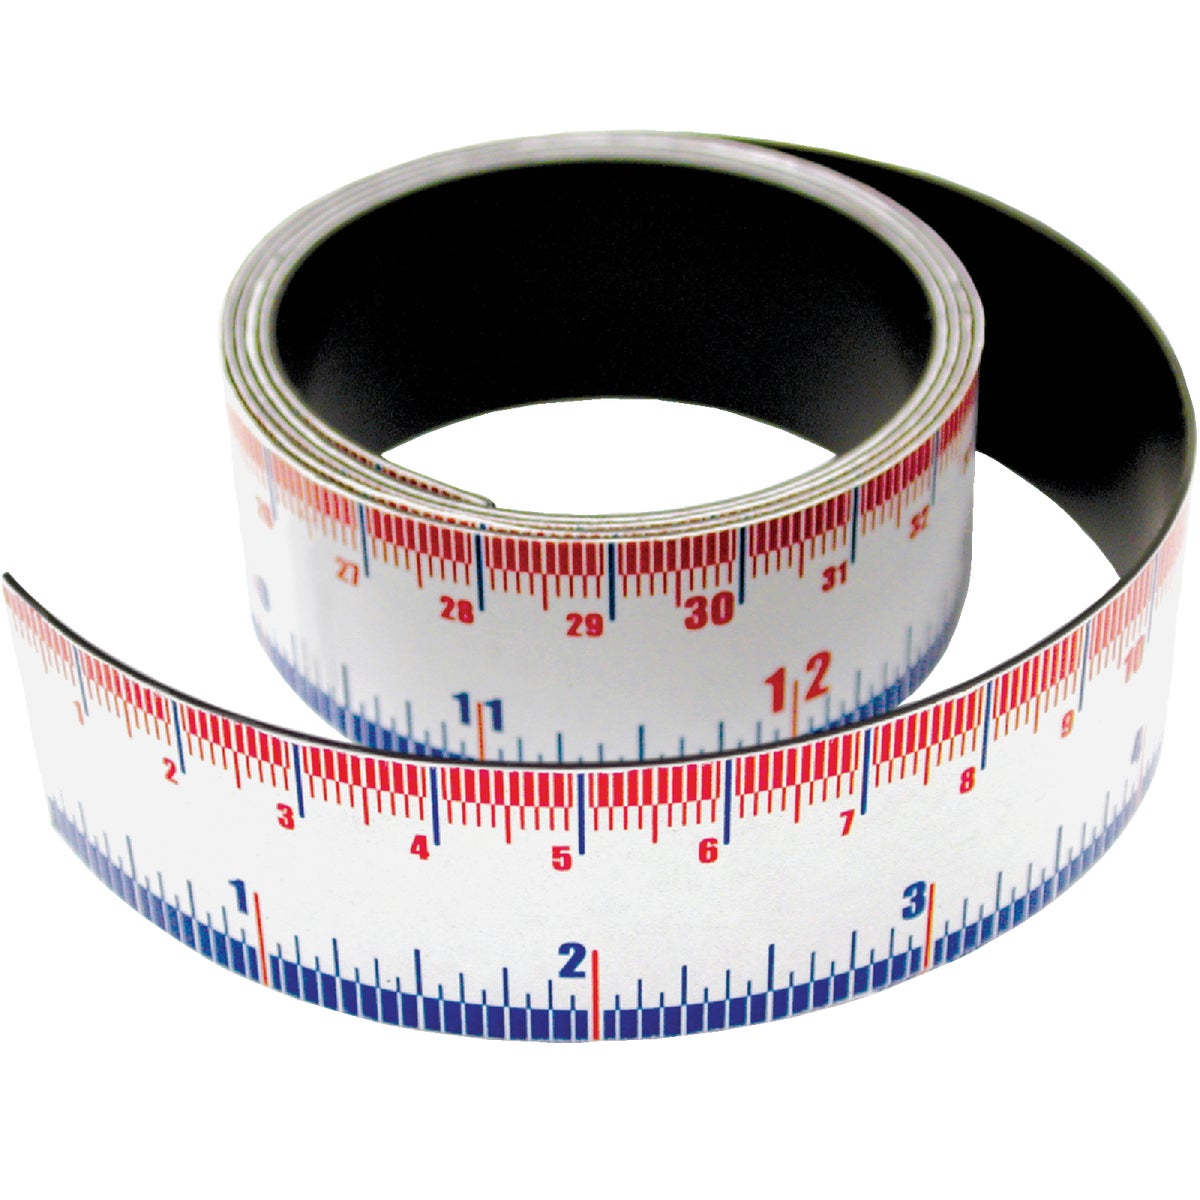 Master Magnetics 3 Ft. Flexible Measuring Tape